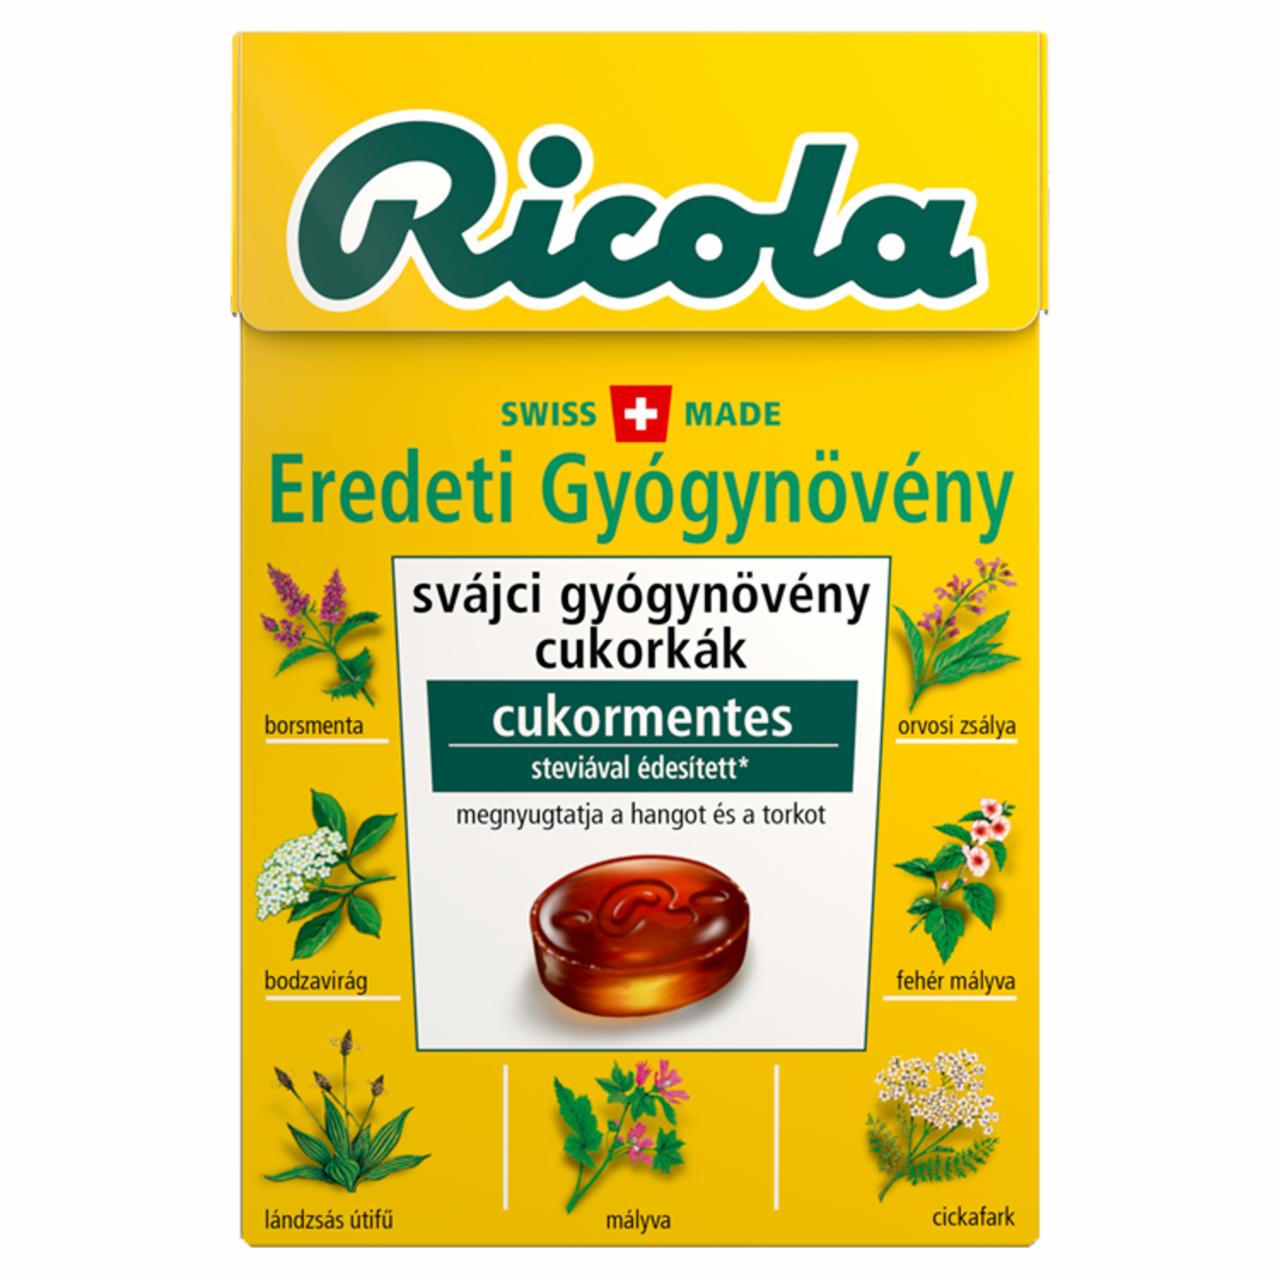 Képek - Ricola Eredeti Gyógynövény cukormentes svájci gyógynövény cukorkák édesítőszerekkel 40 g